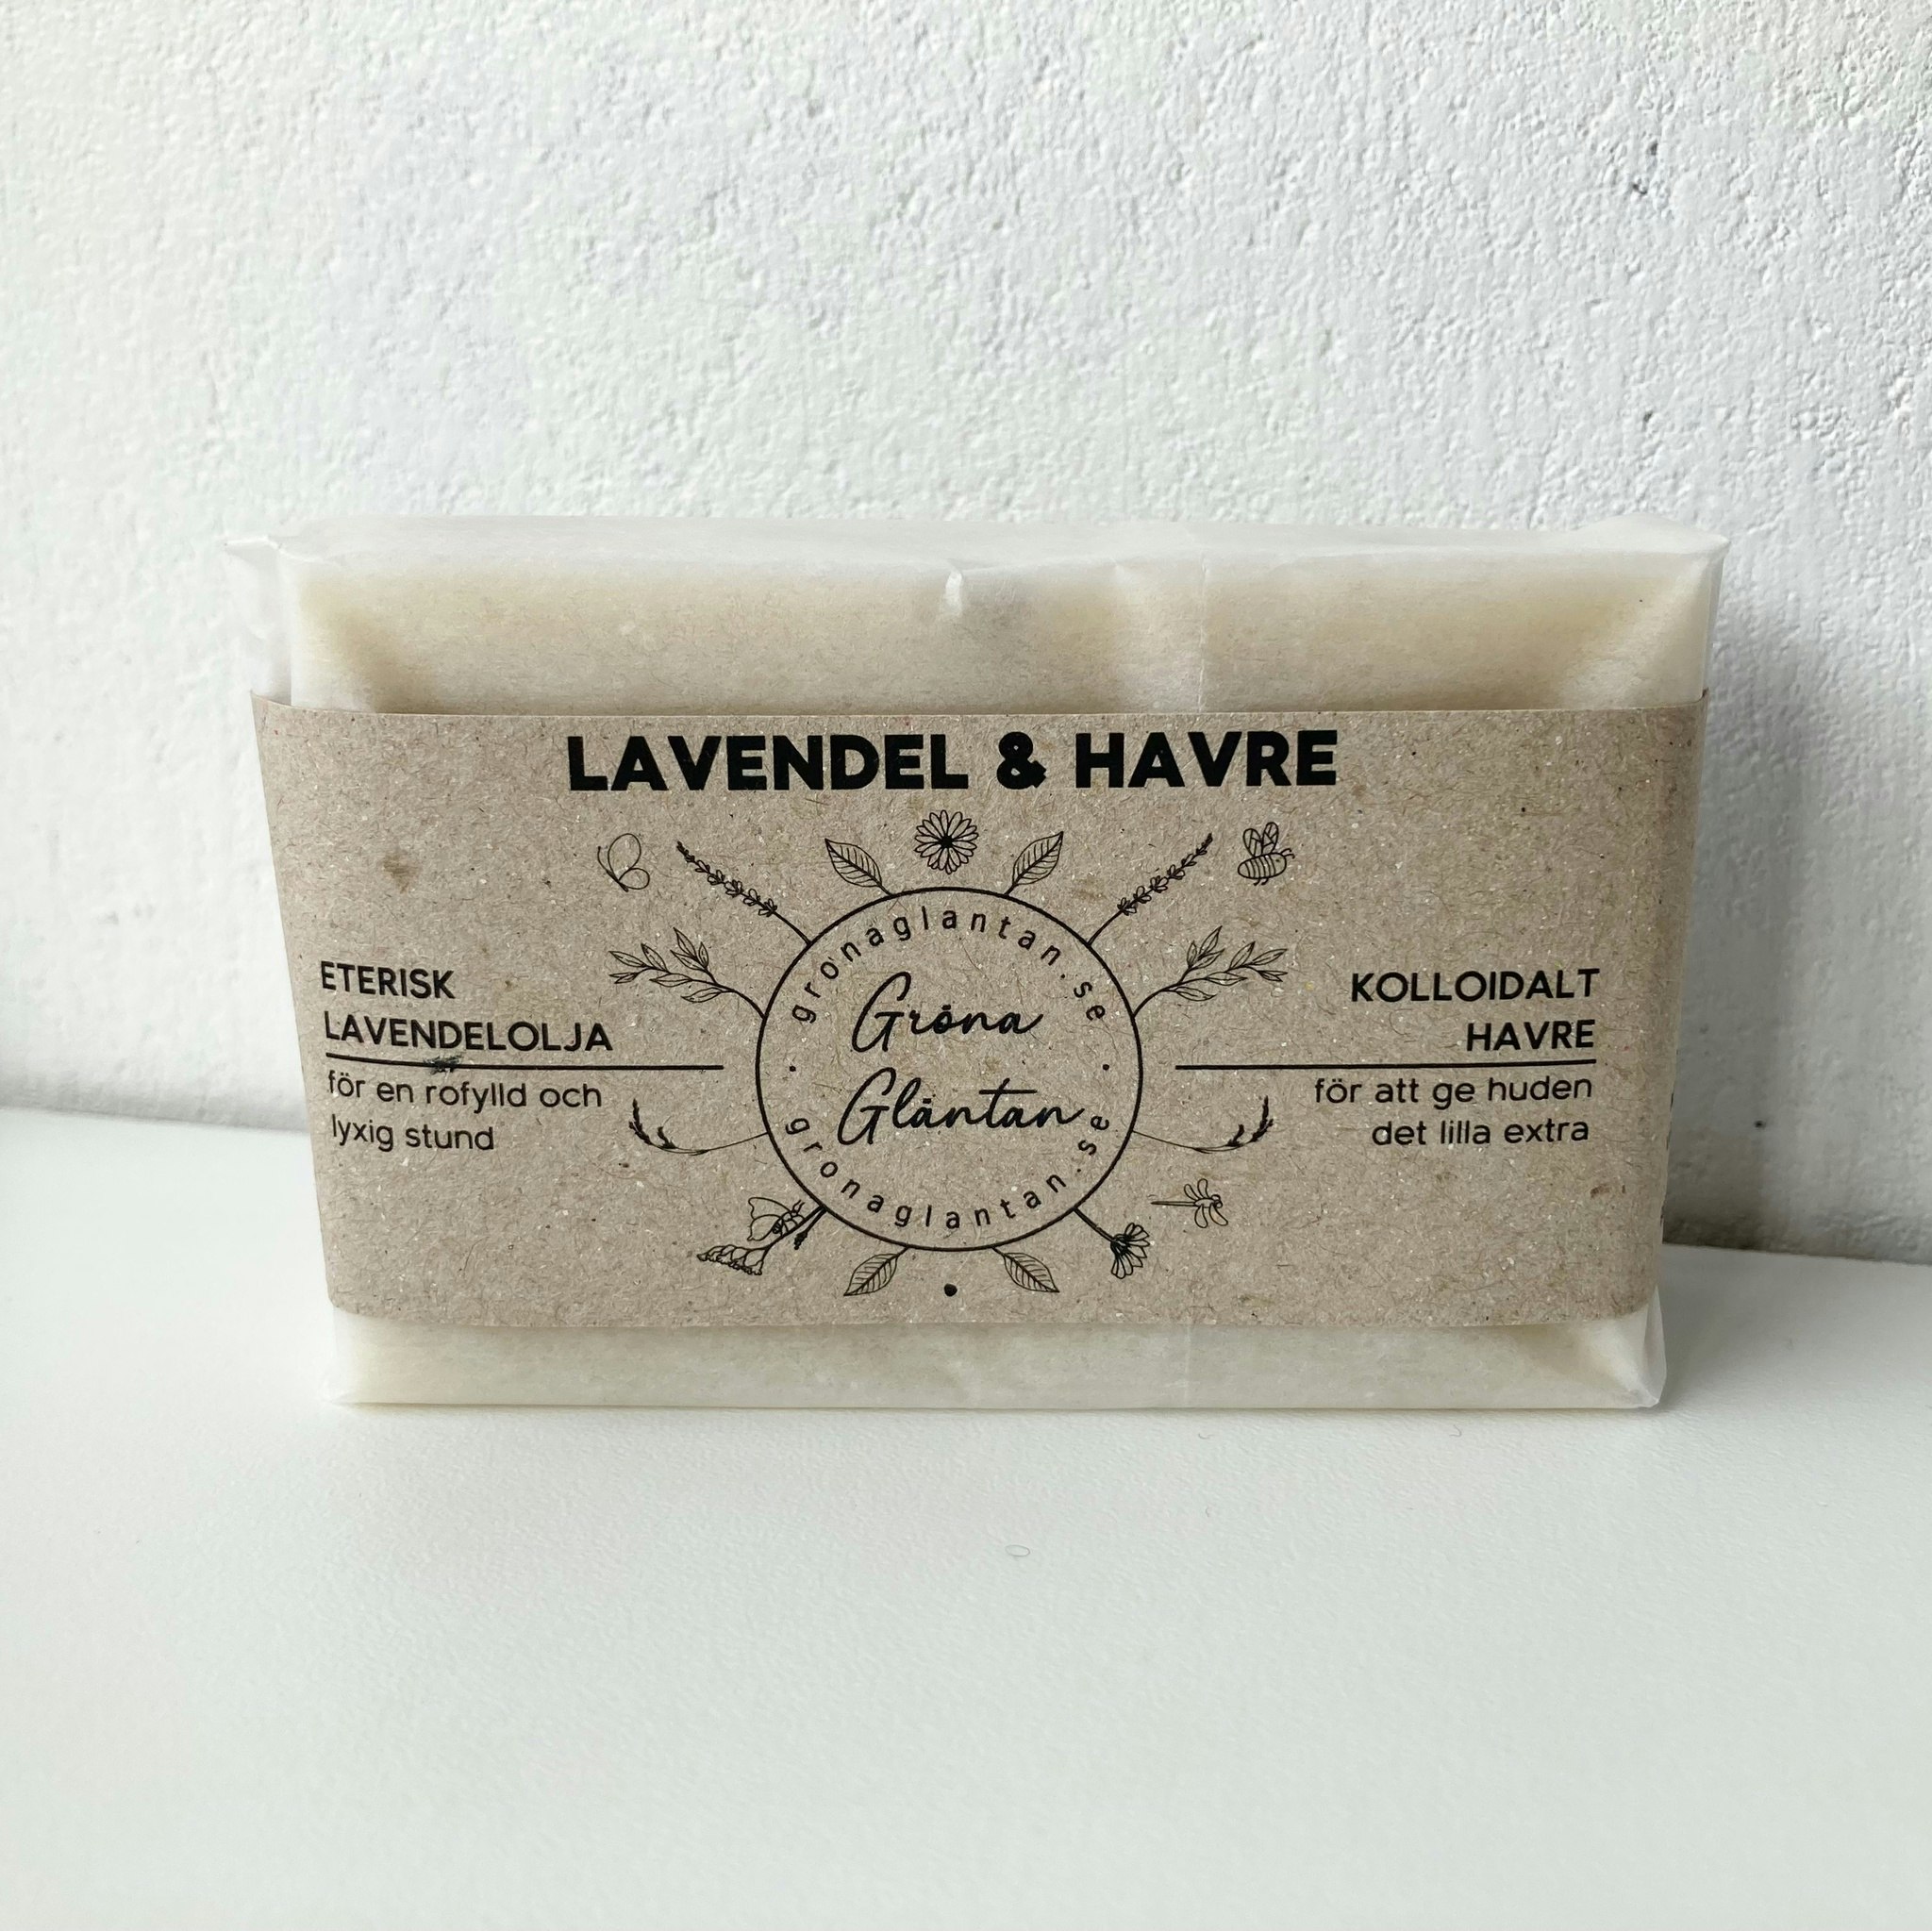 Lavendel & Havre